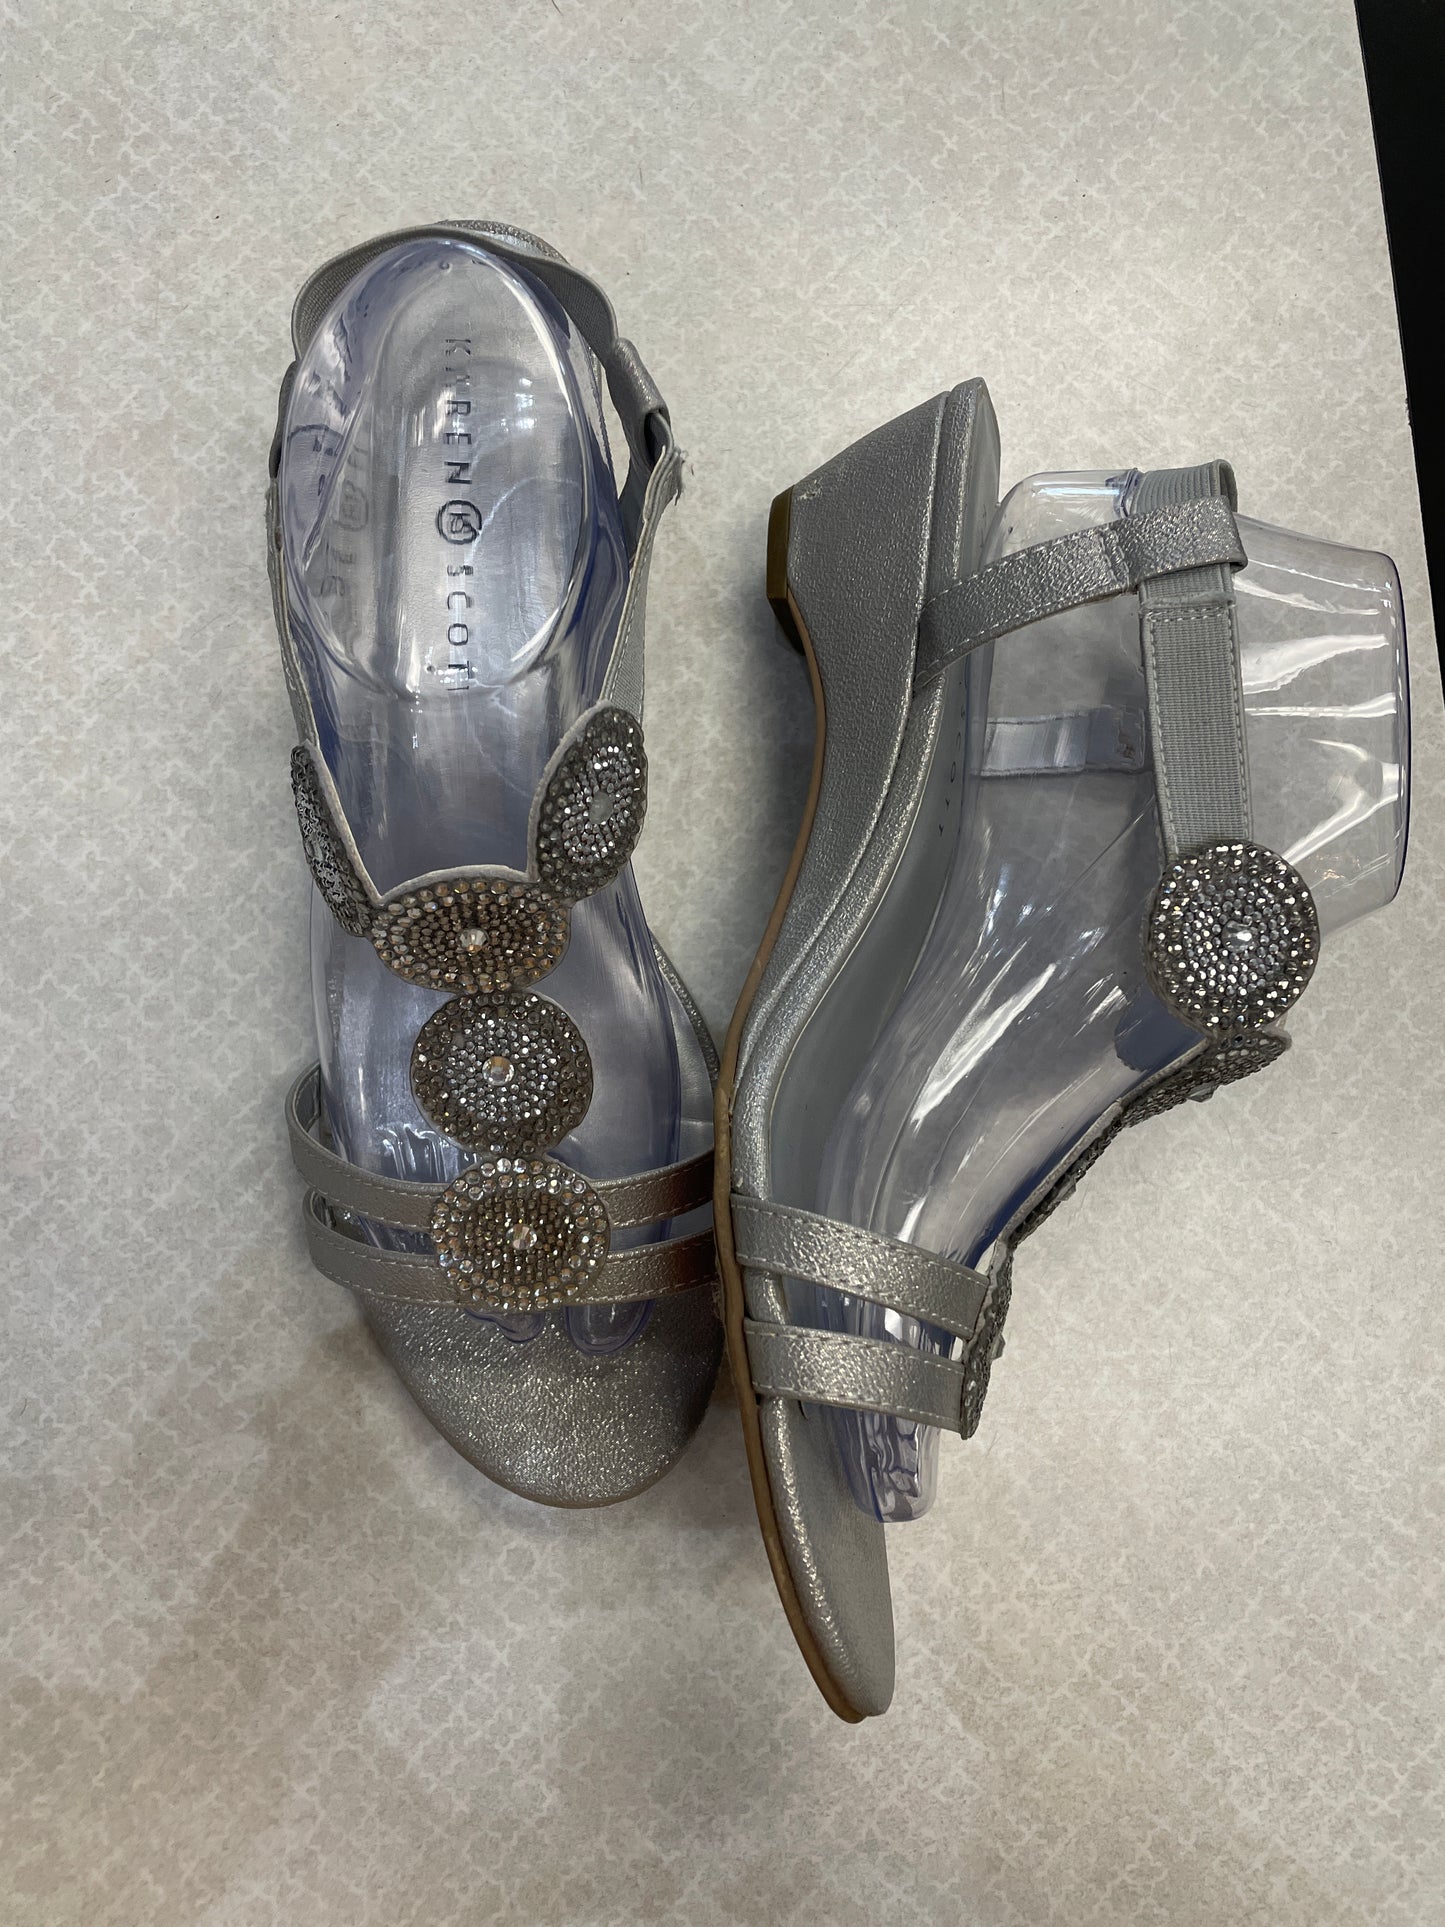 Sandals Heels Wedge By Karen Scott  Size: 11